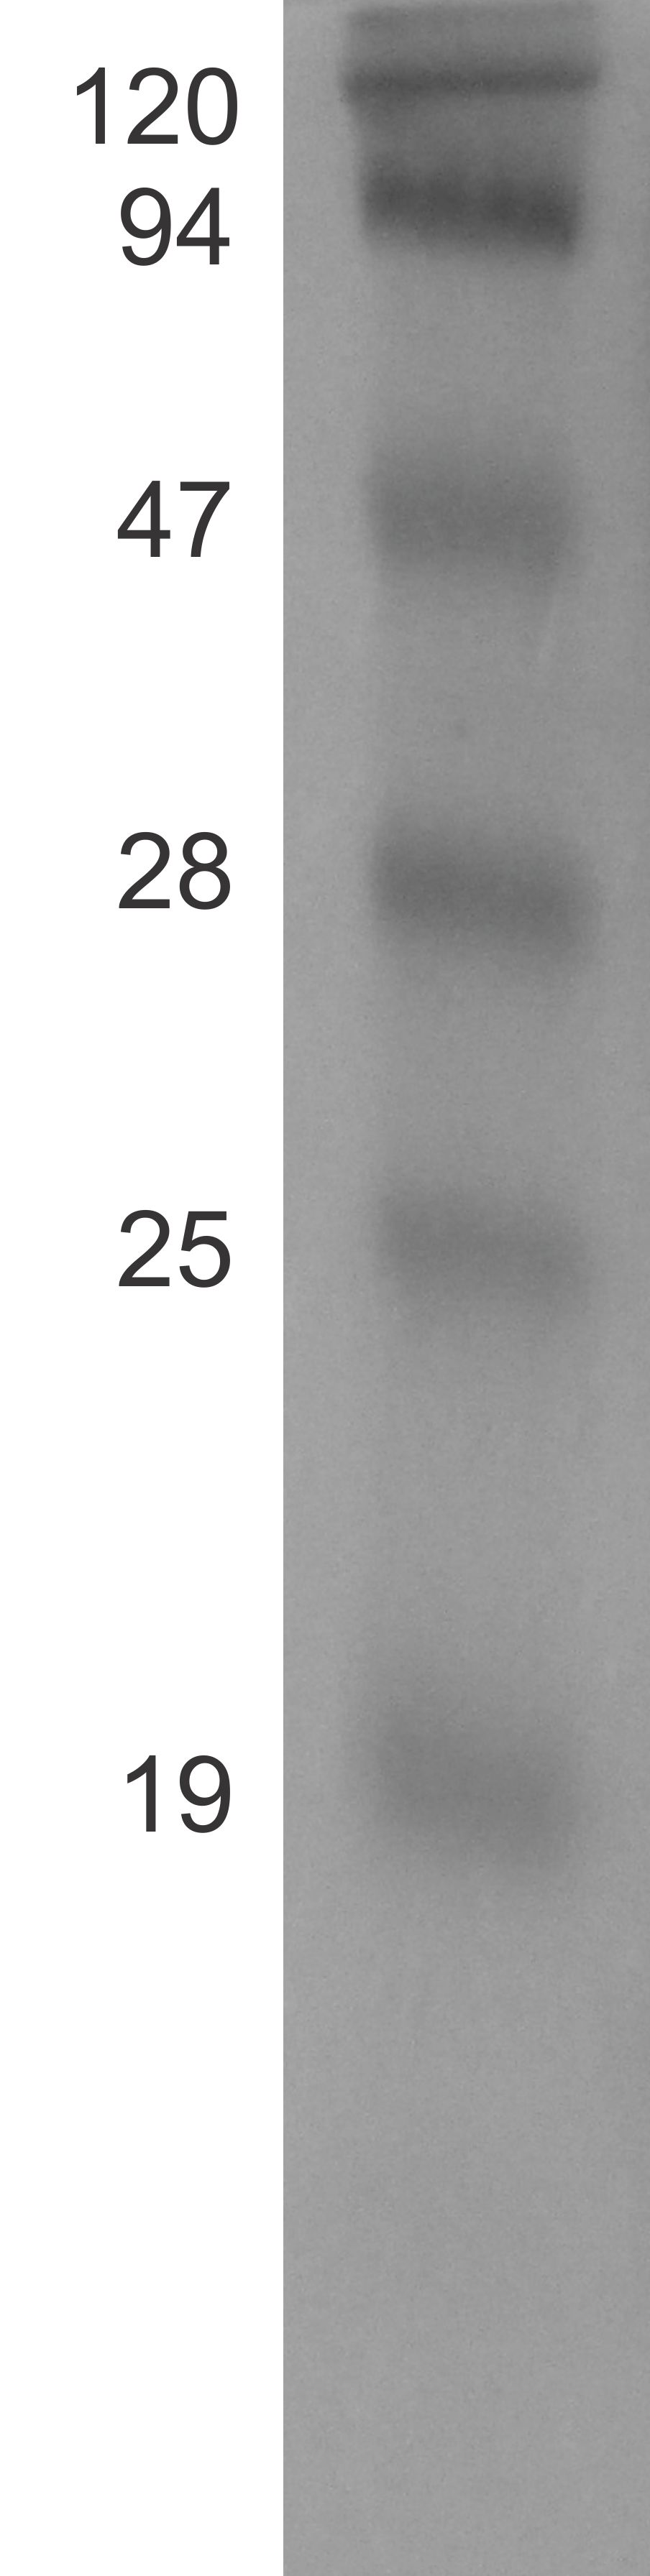 kda PM 01 02 03 04 05 Figura 5: A imagem mostra o gel de poliacrilamida depois da eletroforese. A amostra 01 foi retirada do meio com a bactéria BL21 inicialmente.